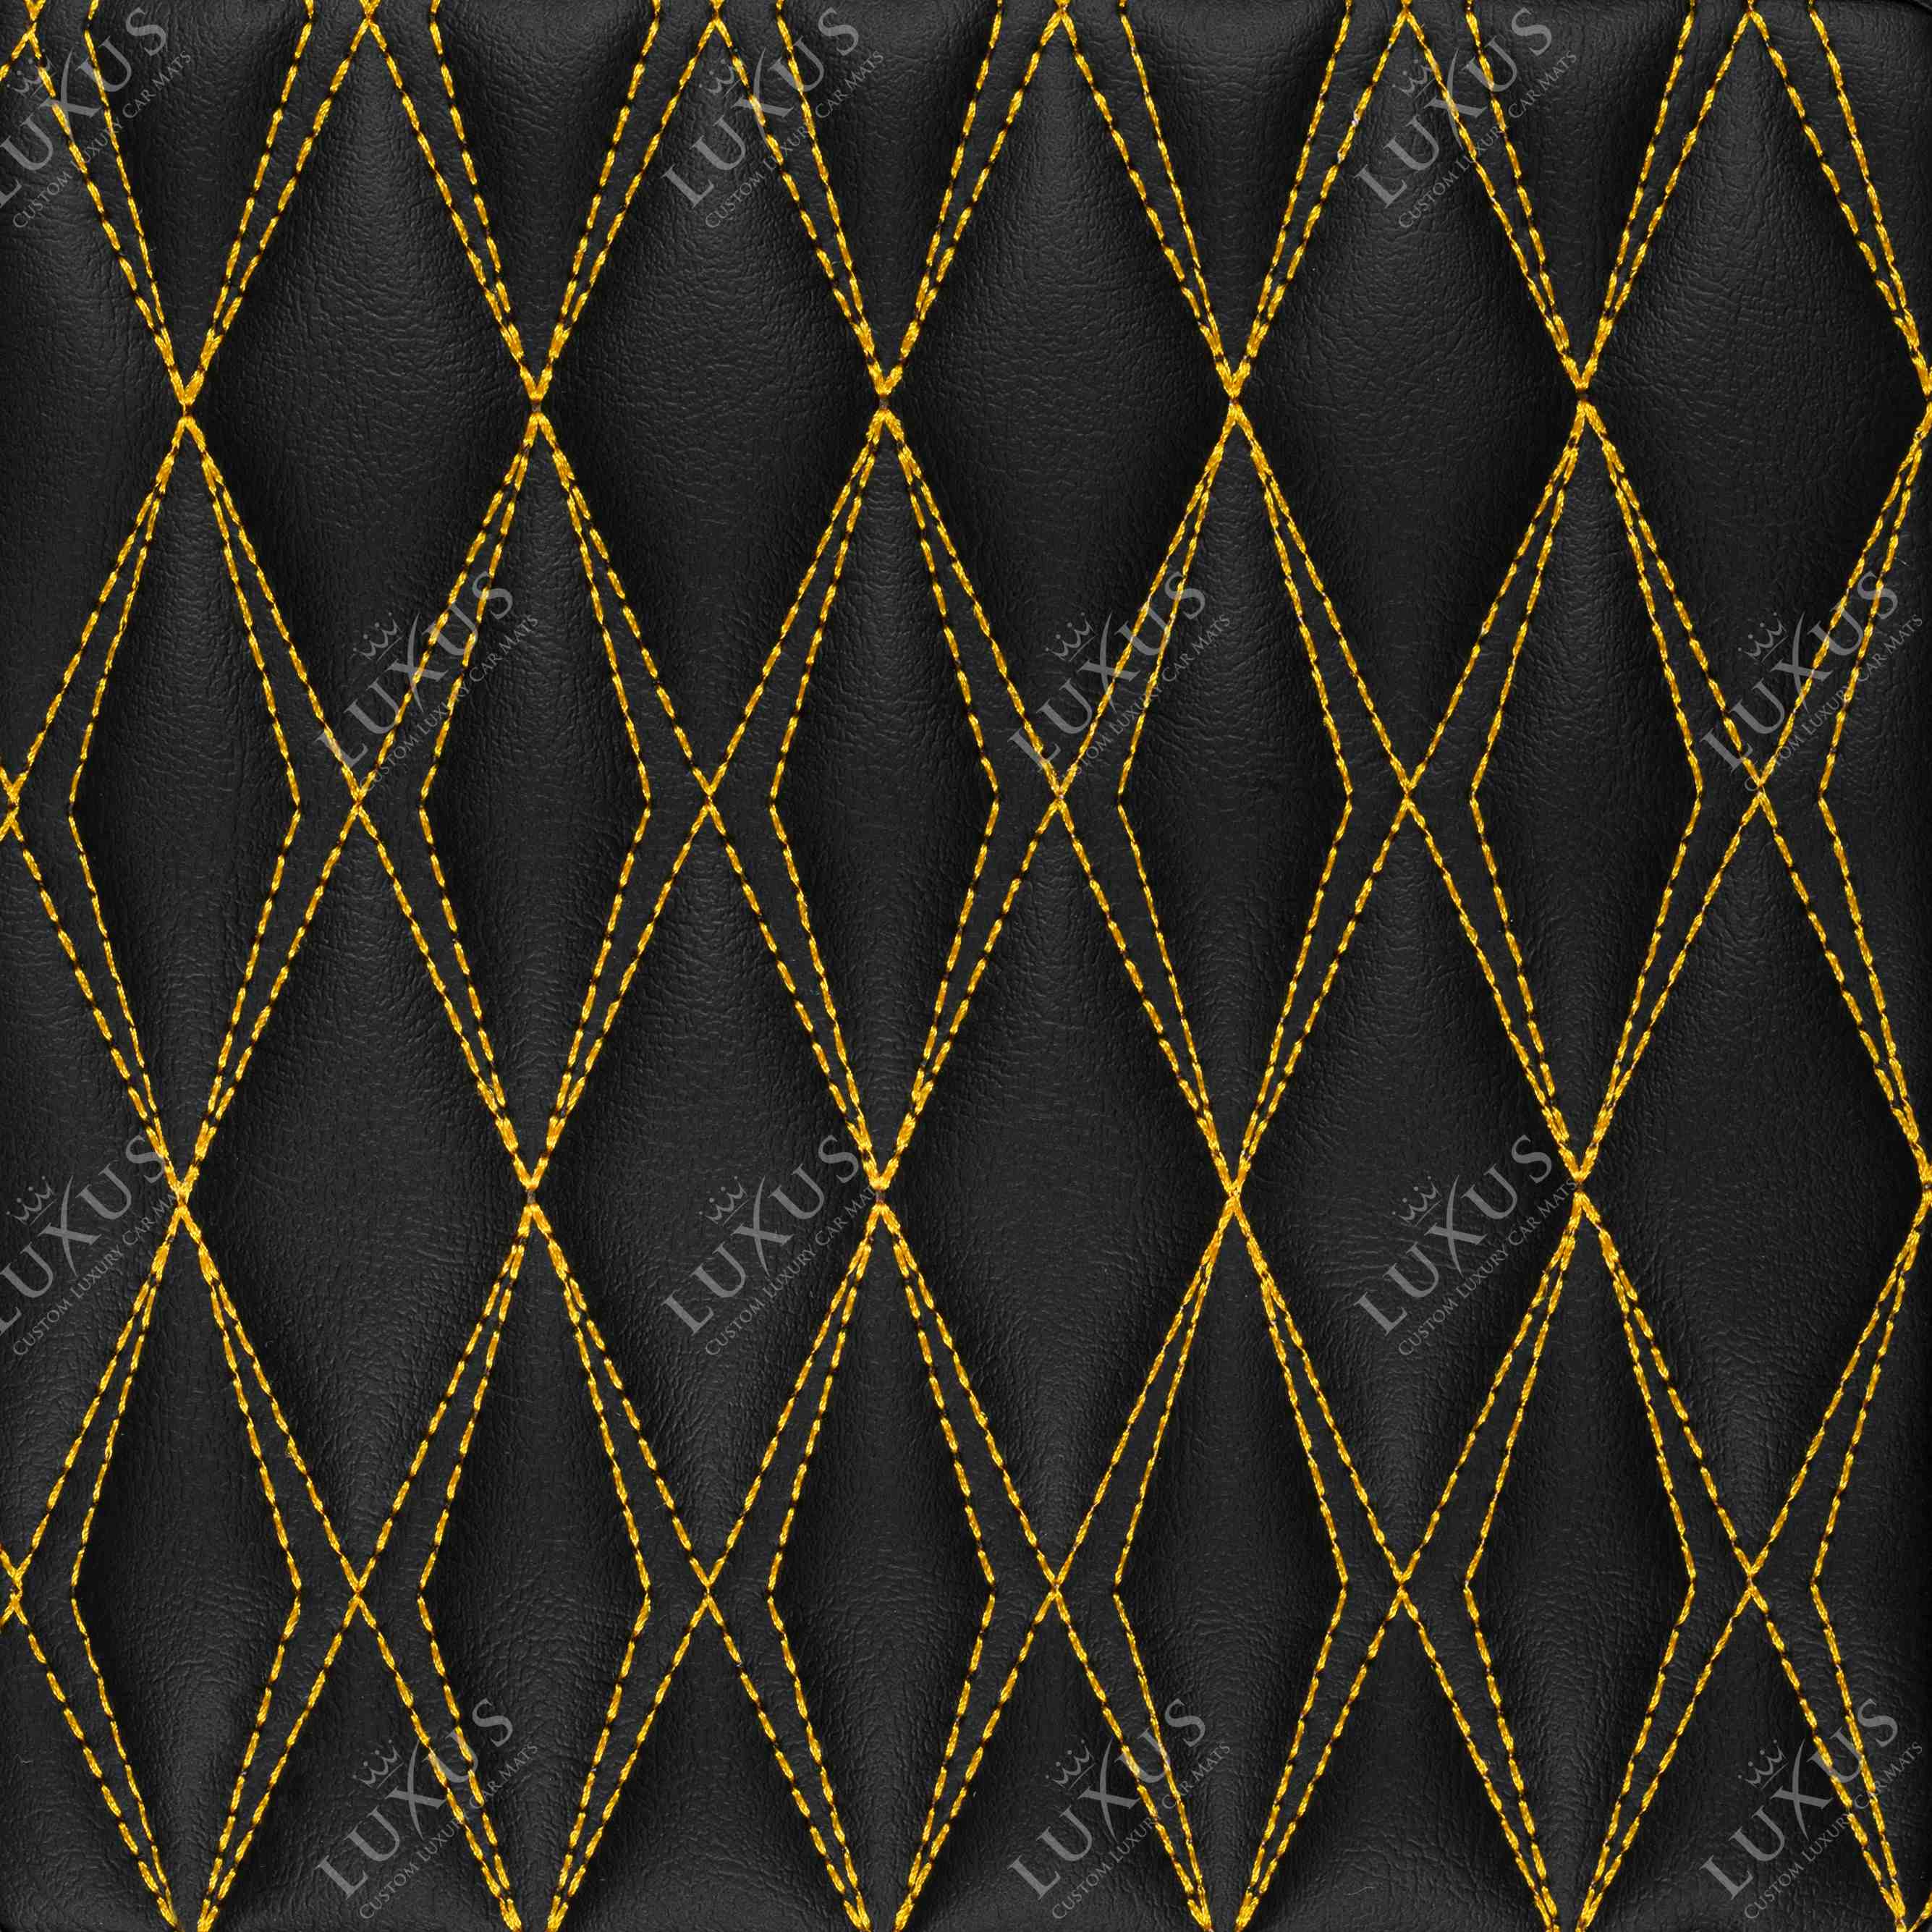 Black & Yellow Stitching Twin-Diamond Luxury Boot/Trunk Mat